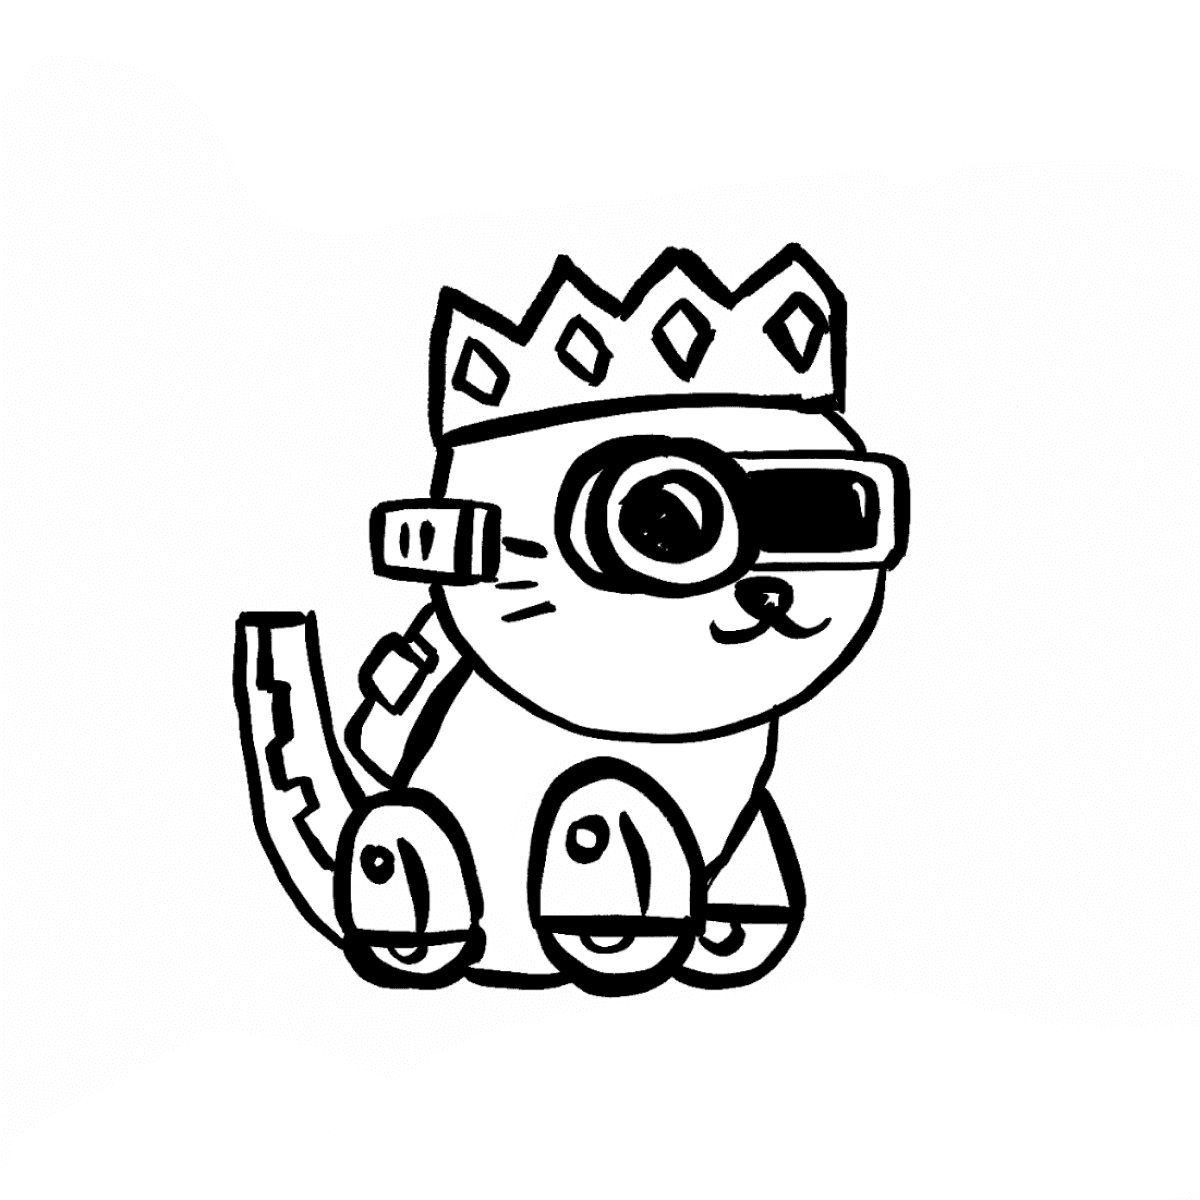 Queen Kittyboto